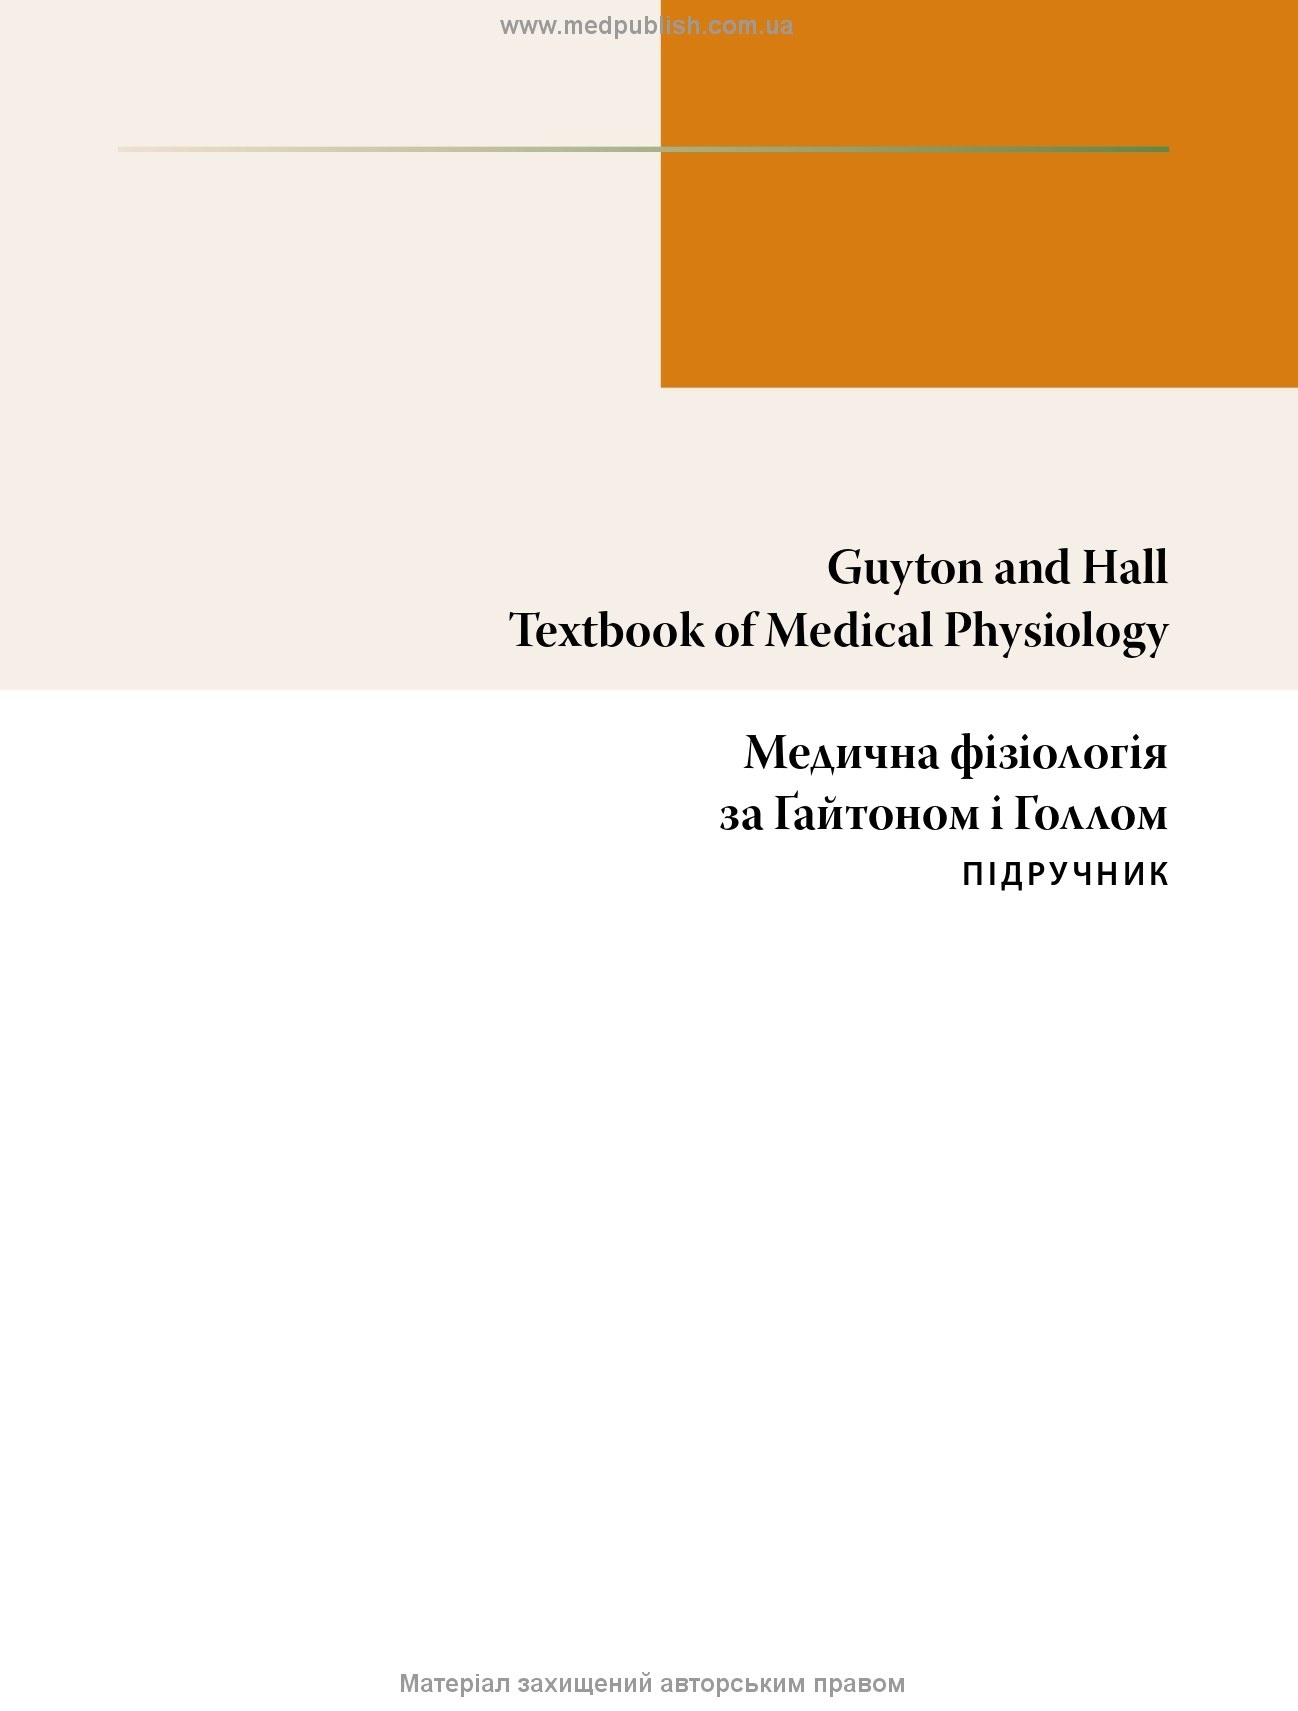 Медична фізіологія за Гайтоном і Голлом: 14-е видання: у 2 томах. Том 1. Автор — Джон Е. Голл. 